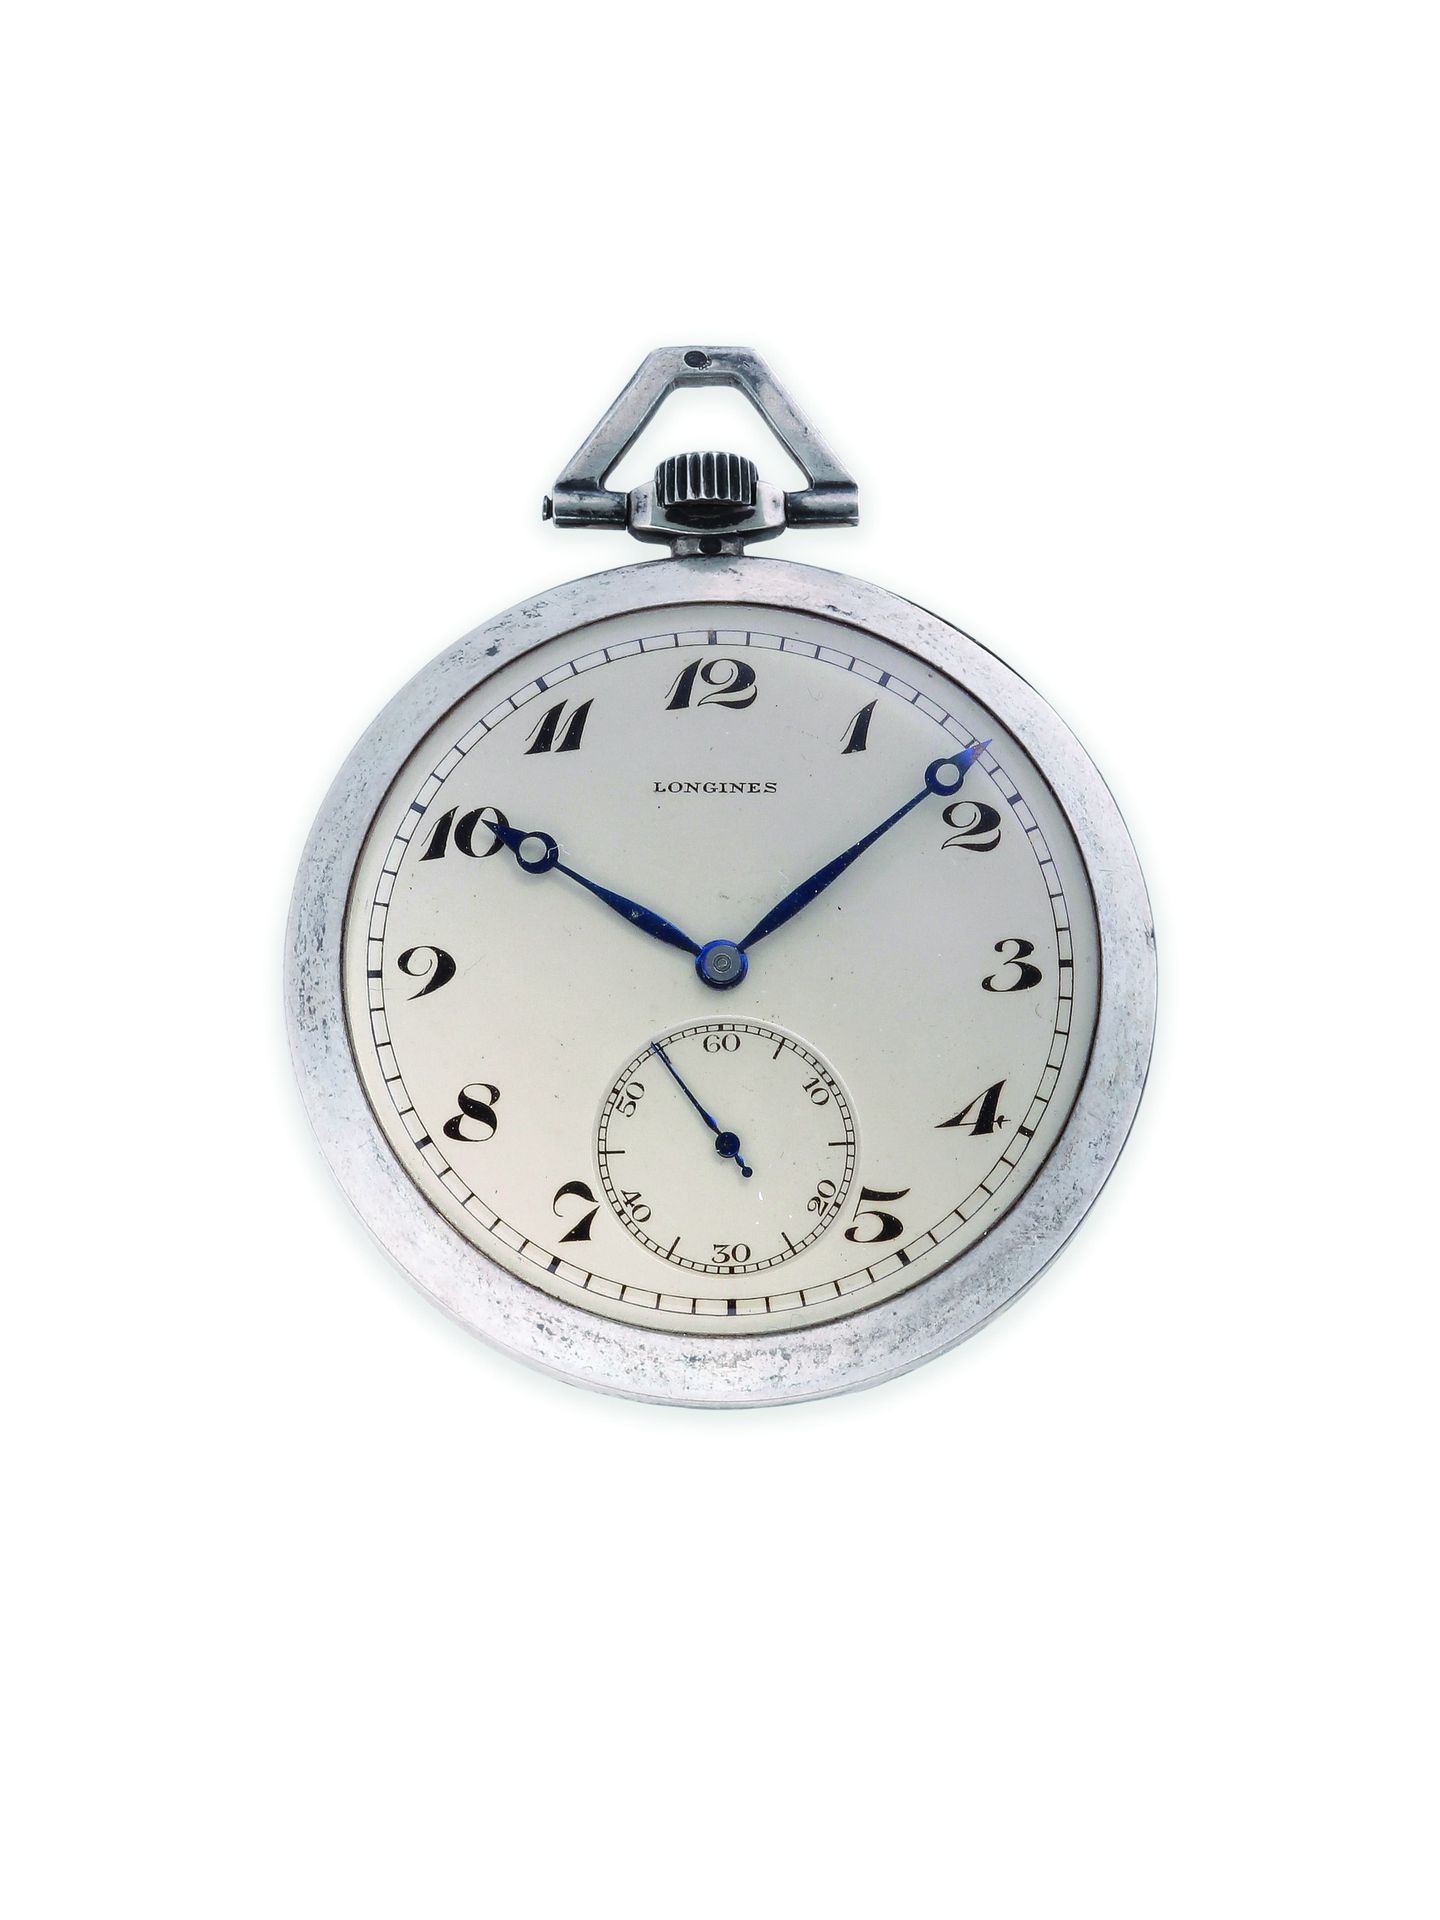 LONGINES Art Deco
Taschenuhr aus 900 Tausendstel Silber mit mechanischem Uhrwerk&hellip;